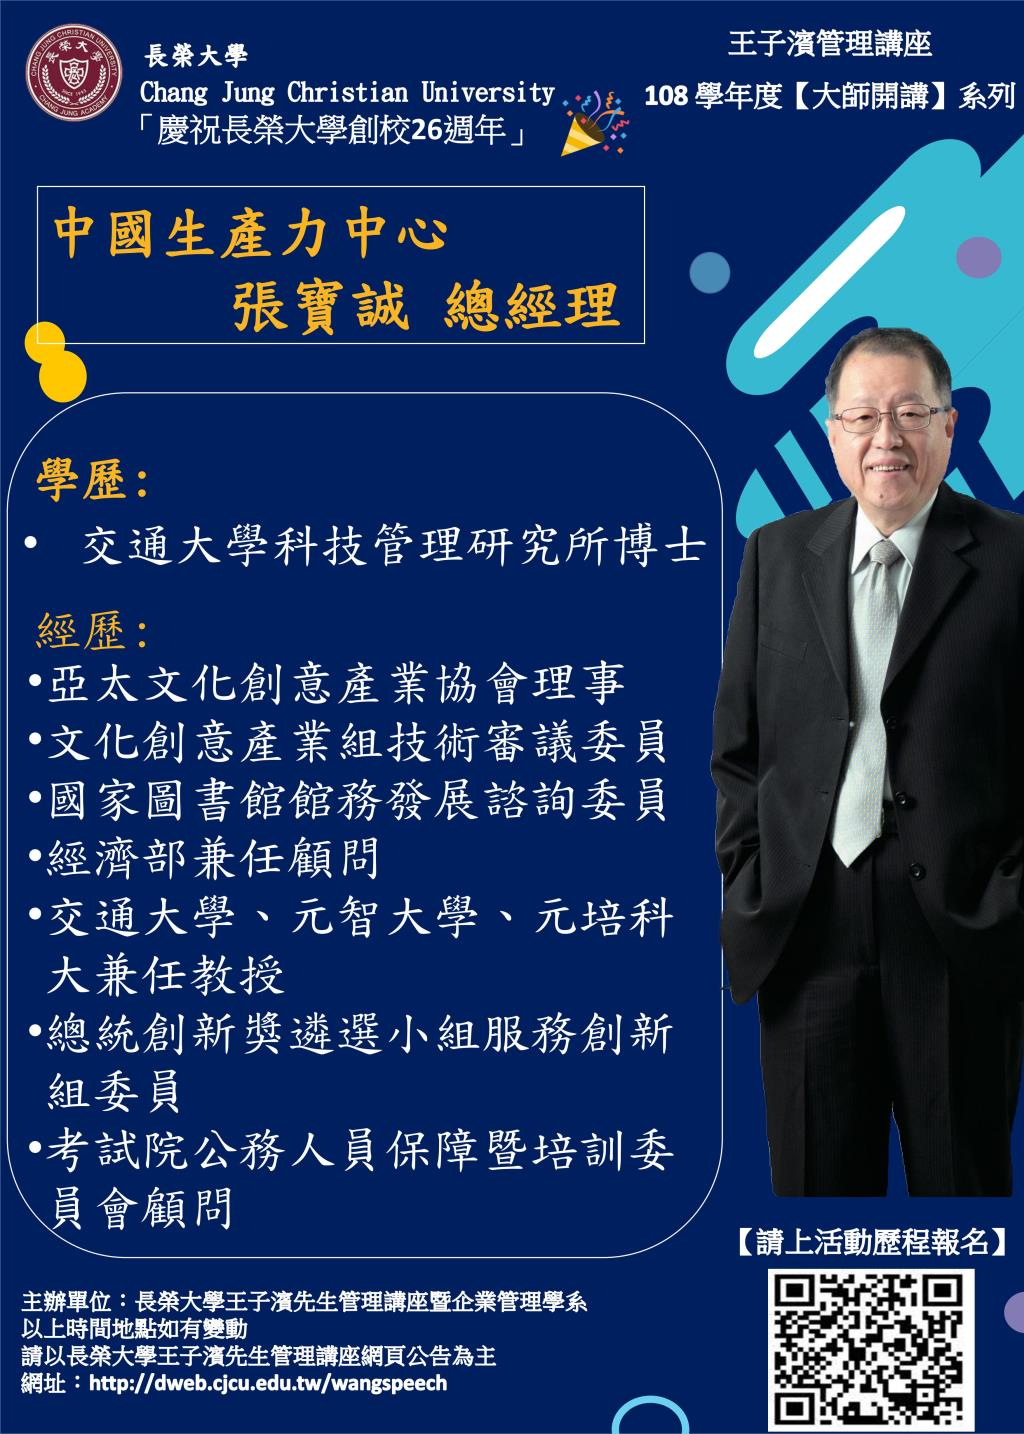 敬邀參加本週五下午(12/20)王子濱先生管理講---中國生產力中心 張寶誠總經理